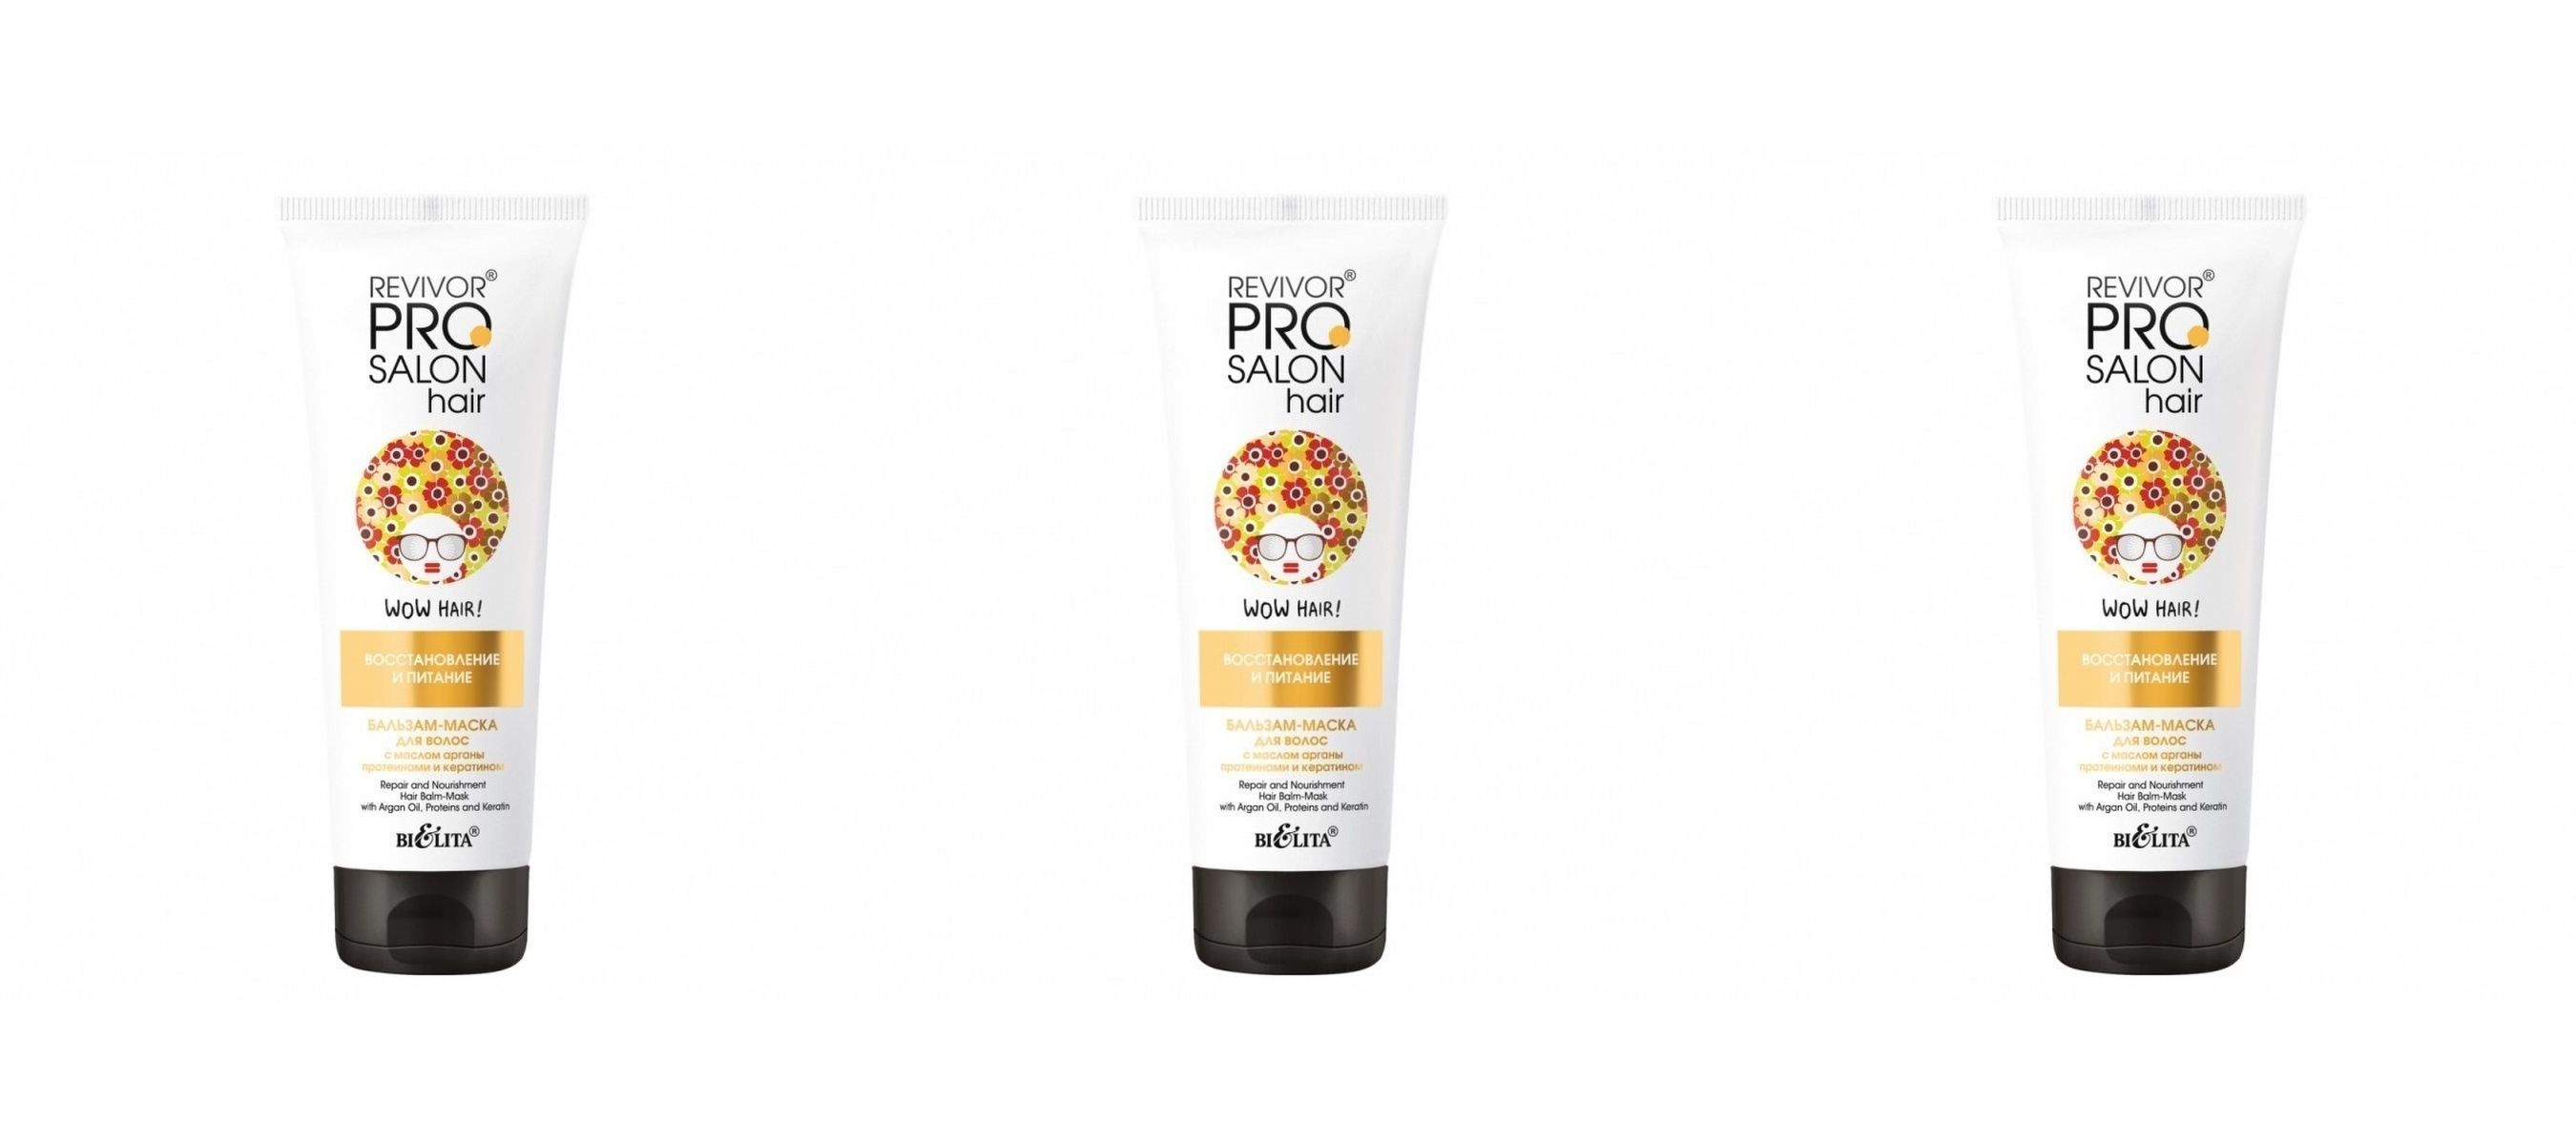 Бальзам-маска для волос Белита Revivor PRO Salon Hair Восстановление и питание 200мл 3 шт